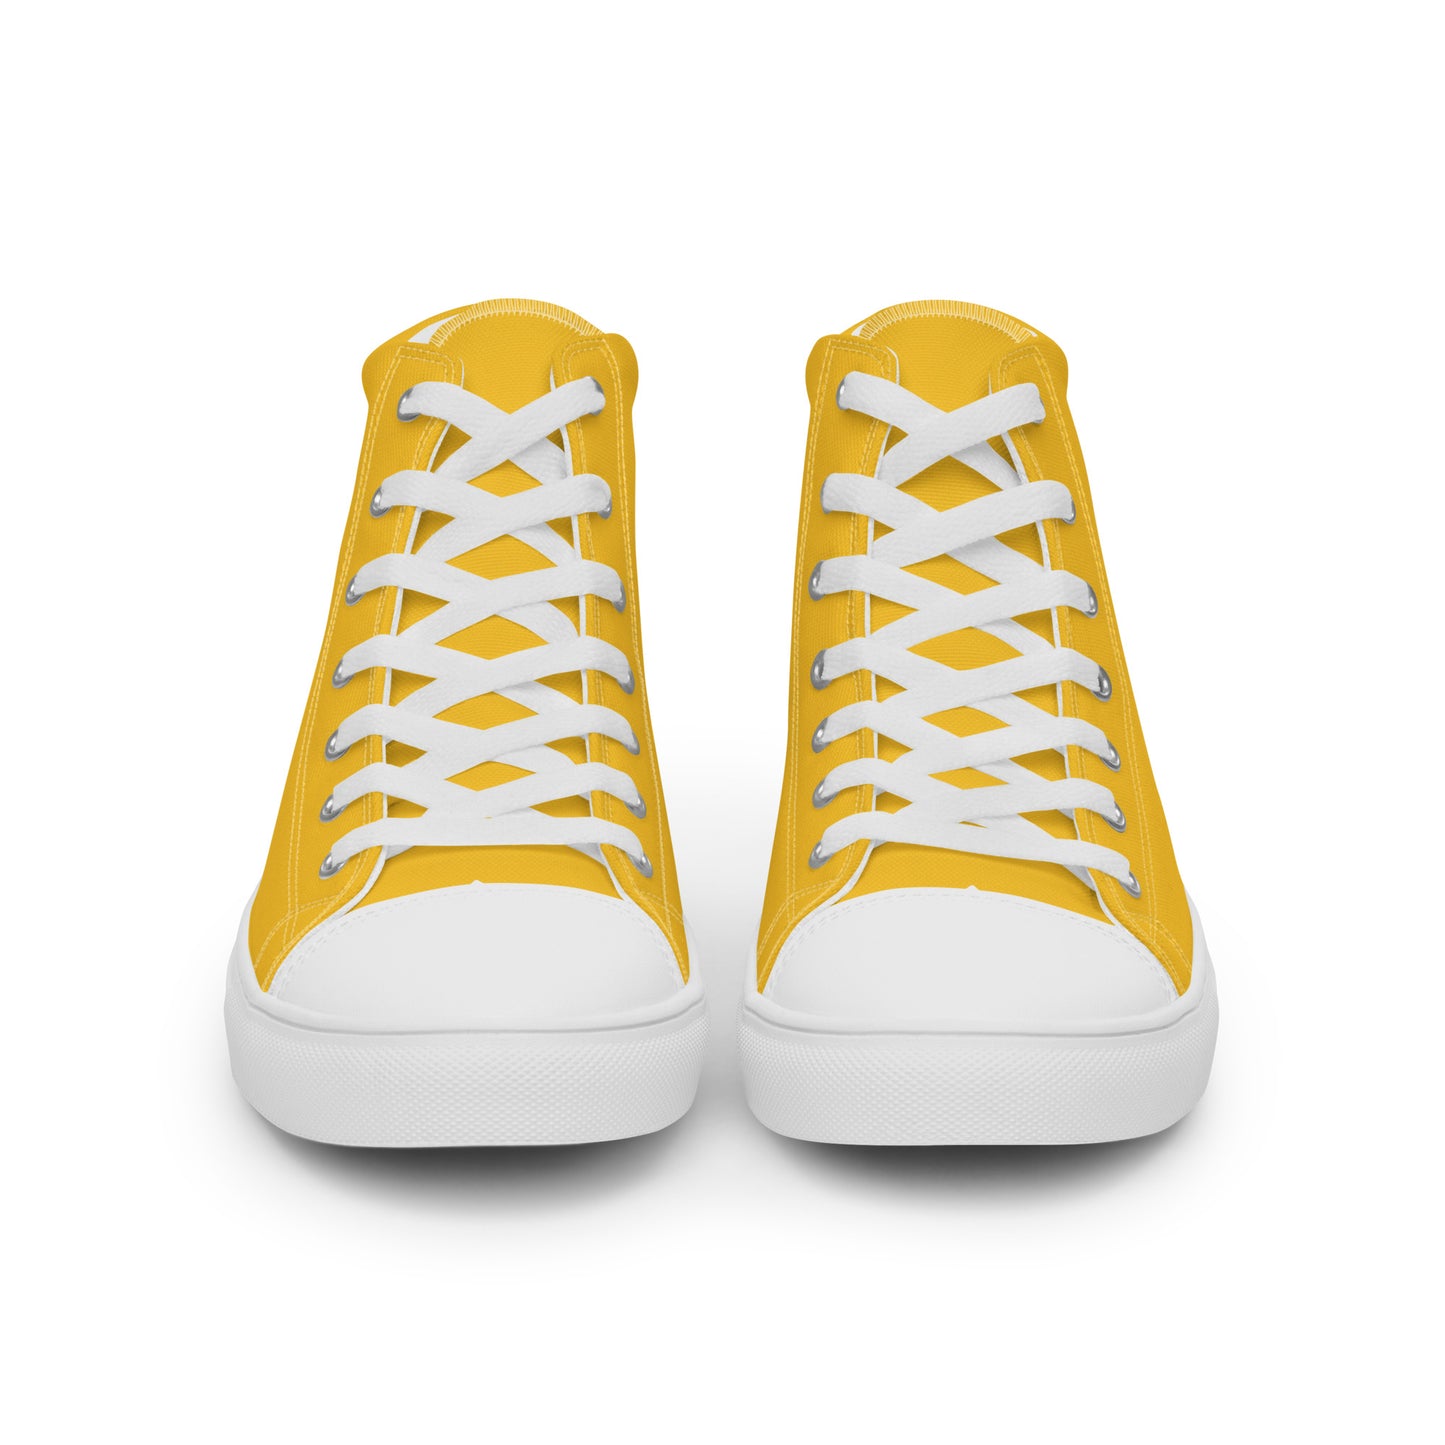 Brasil - Women - Yellow - High top shoes